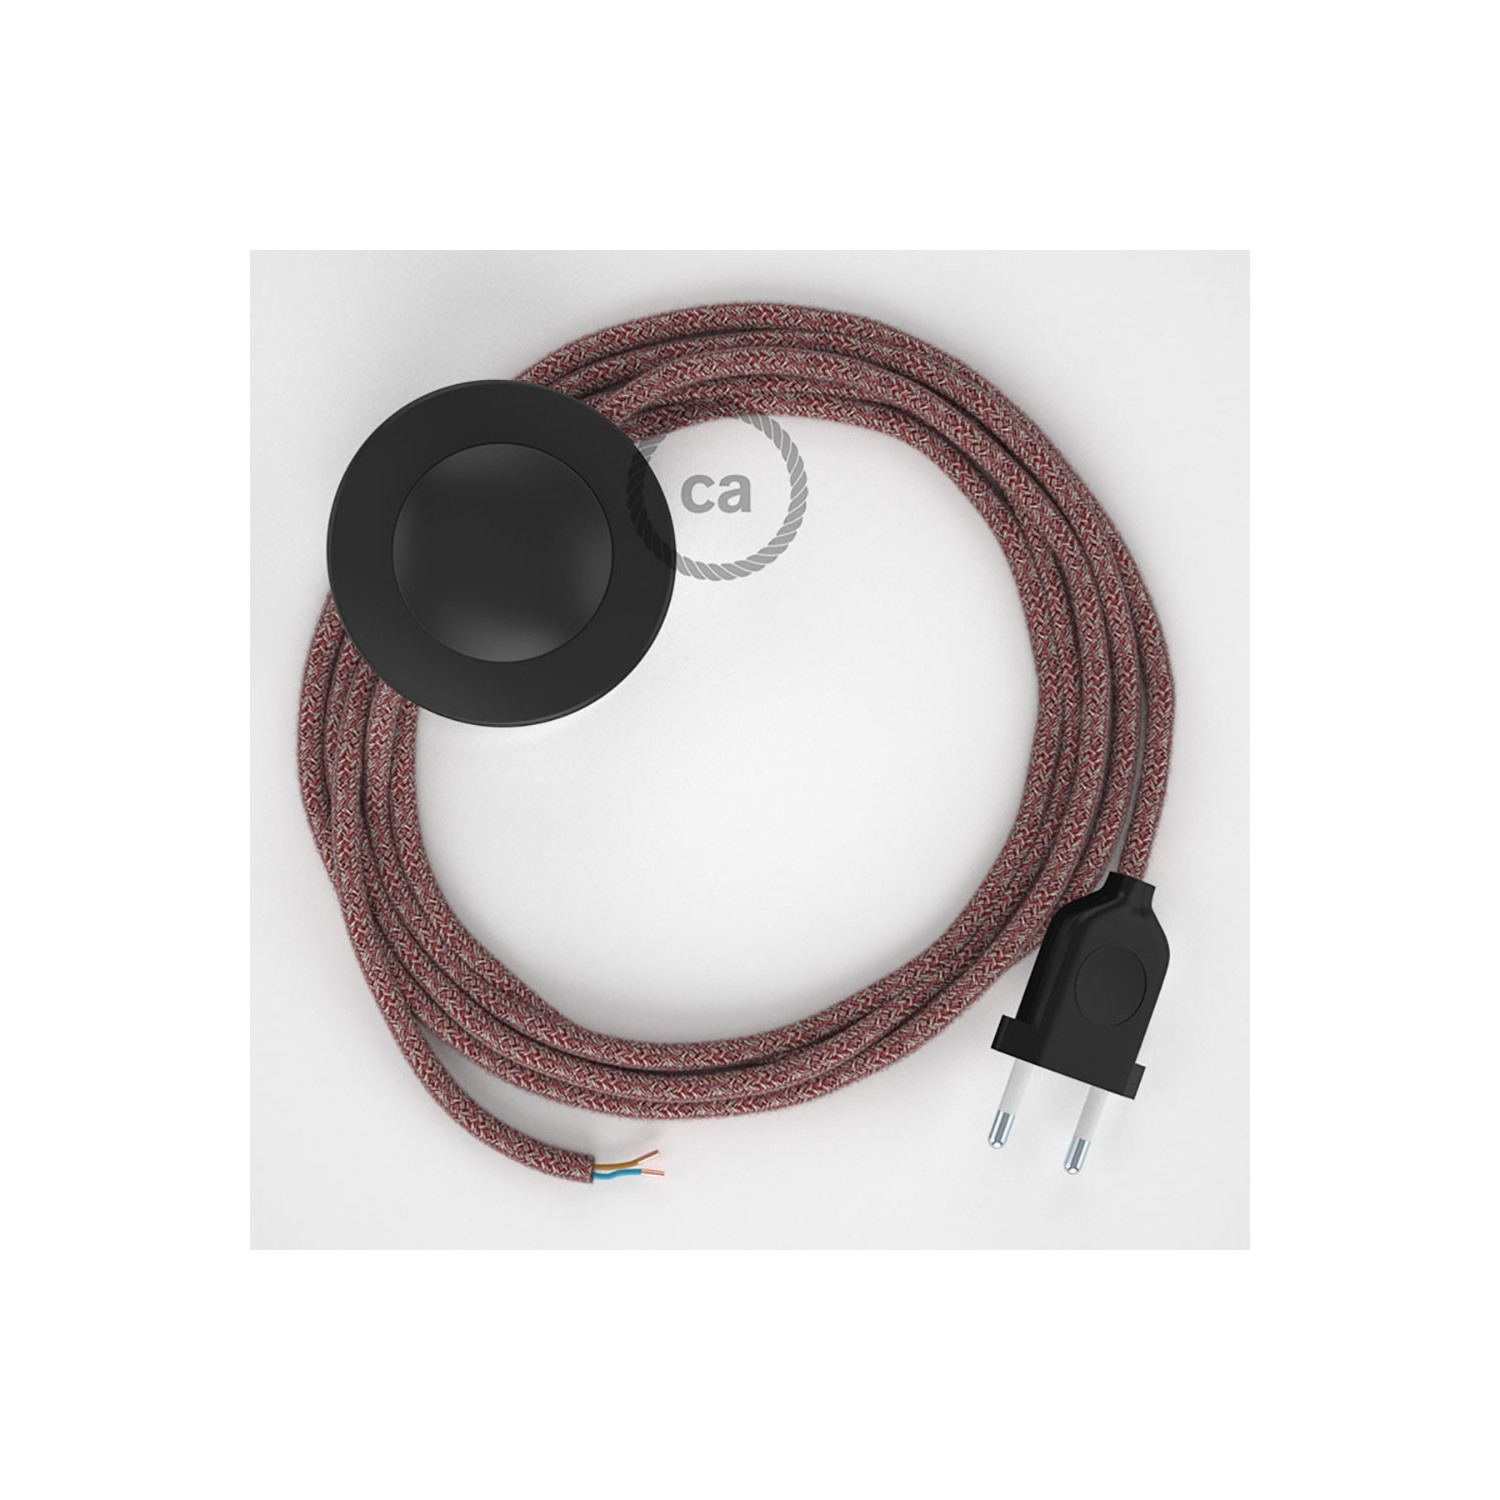 Napajecí kabel pro stojící lampu, RS83 červený bavlna a přírodní len 3 m. Vyberte si barvu vypínače a zástrčky.